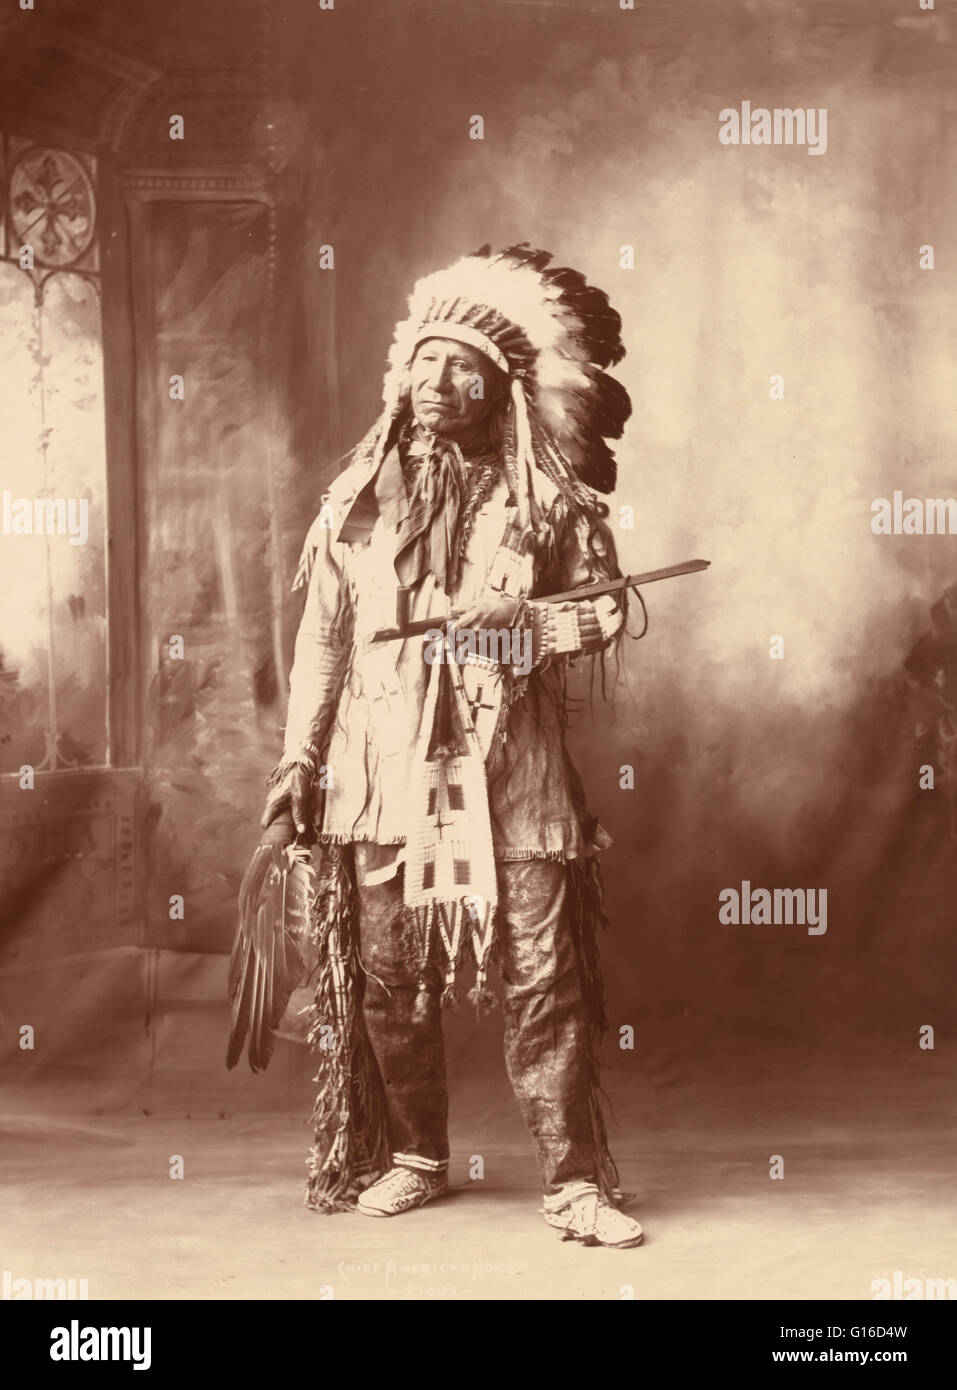 Chief American Horse, fotografiert von Frank A. Rinehart, 3. Januar 1899. American Horse (1840 - 16. Dezember 1908) war eine Oglala Lakota Häuptling, Staatsmann, Pädagoge und Historiker. American Horse zeichnet sich in der amerikanischen Geschichte als US Armee Indian Scout und Stockfoto